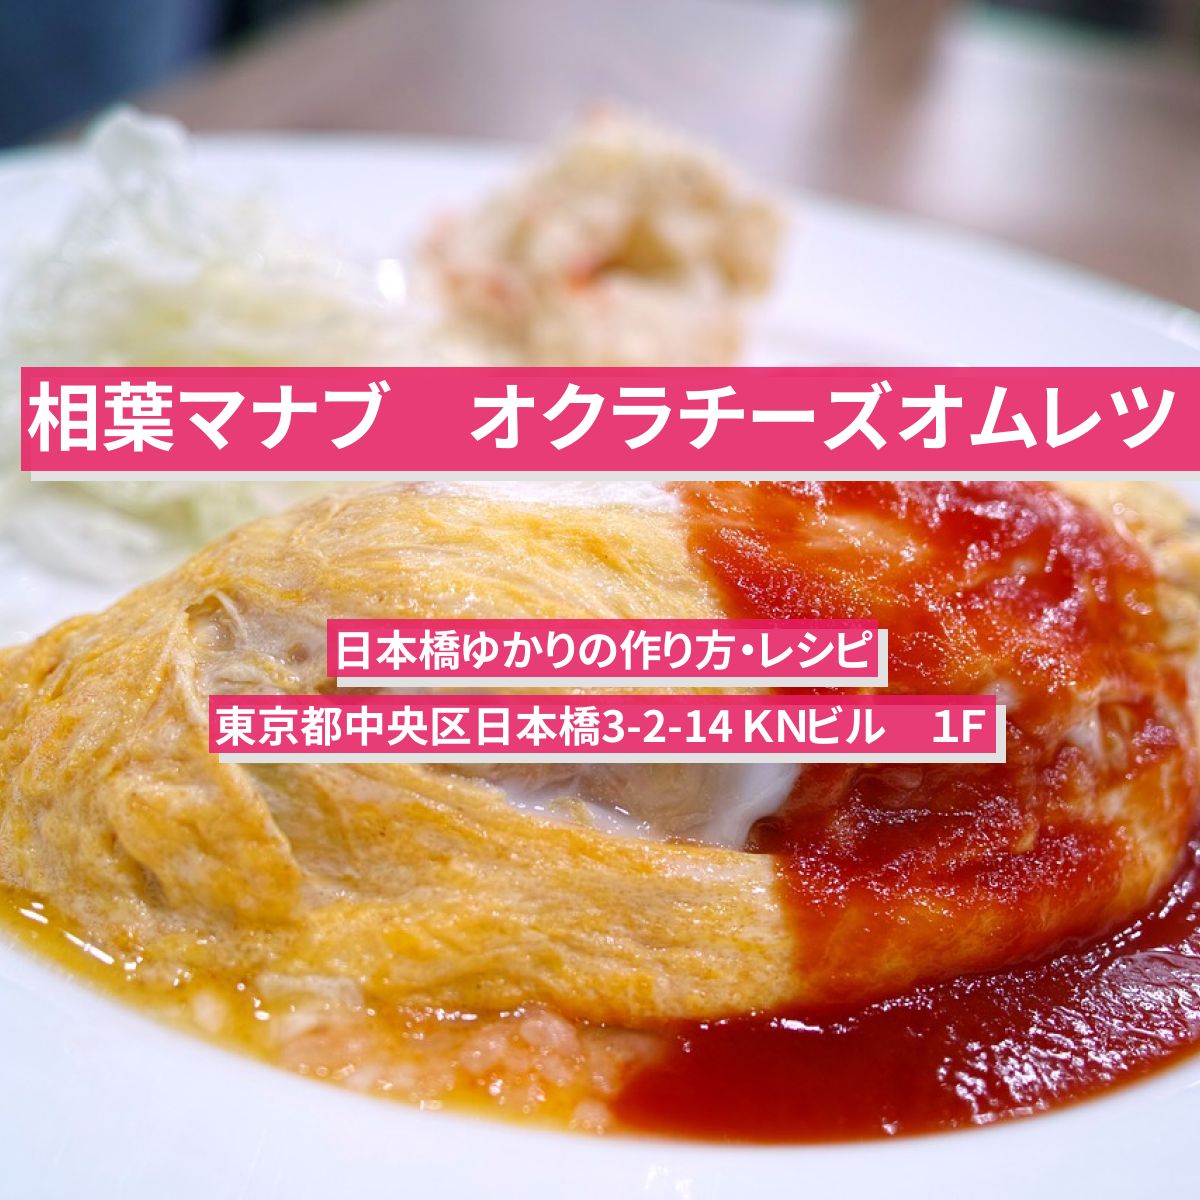 【相葉マナブ】『オクラチーズオムレツ』野永喜三夫さんの作り方